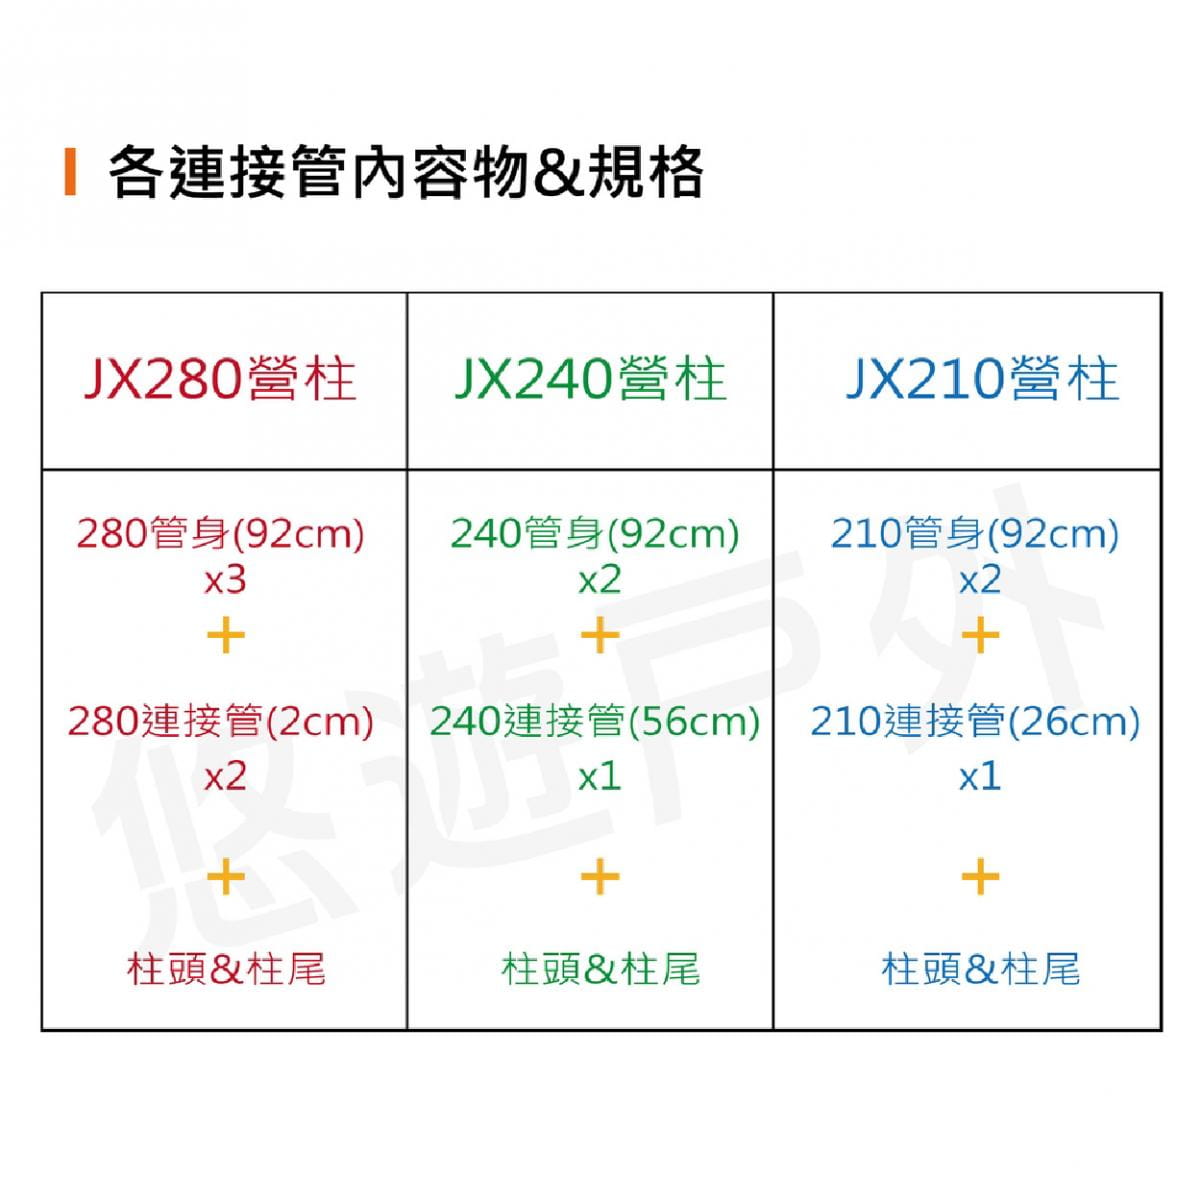 【JX璟勳】JX30 專利鋁合金營柱_210cm  (悠遊戶外) 10